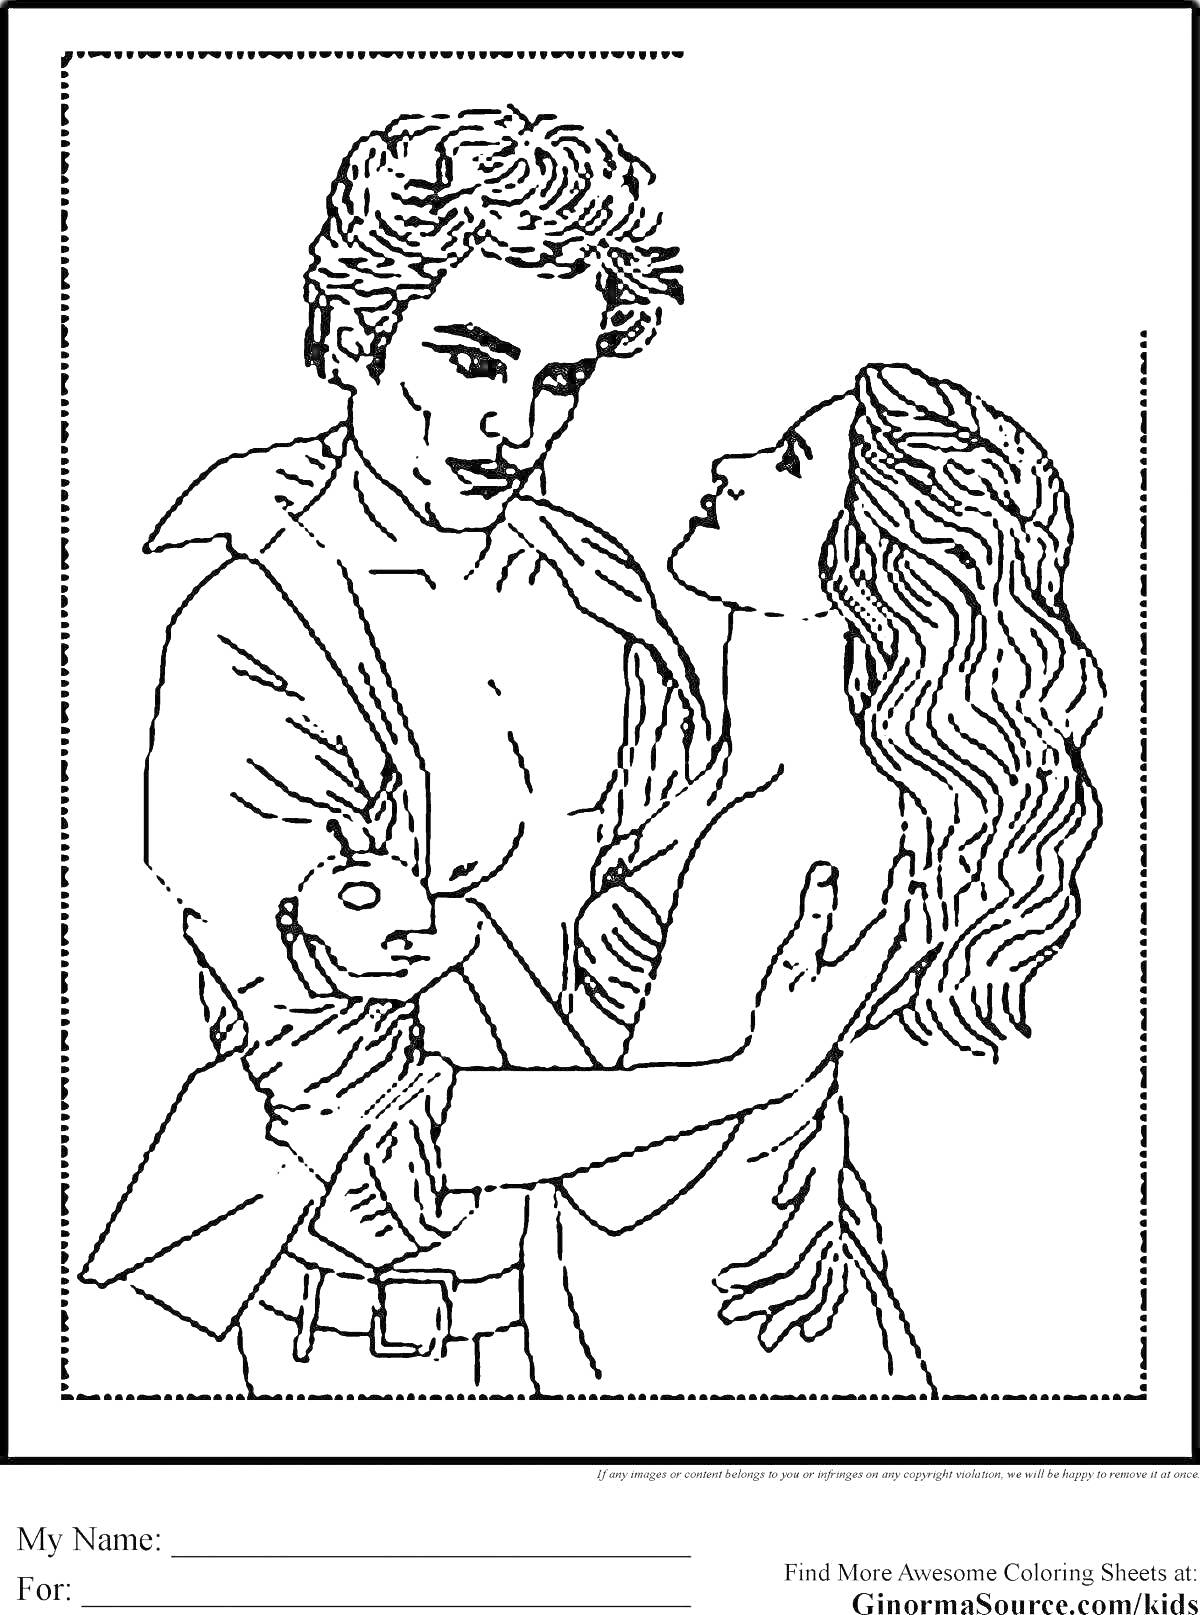 Раскраска пара в обнимку, мужчина держит яблоко, женщина смотрит на него